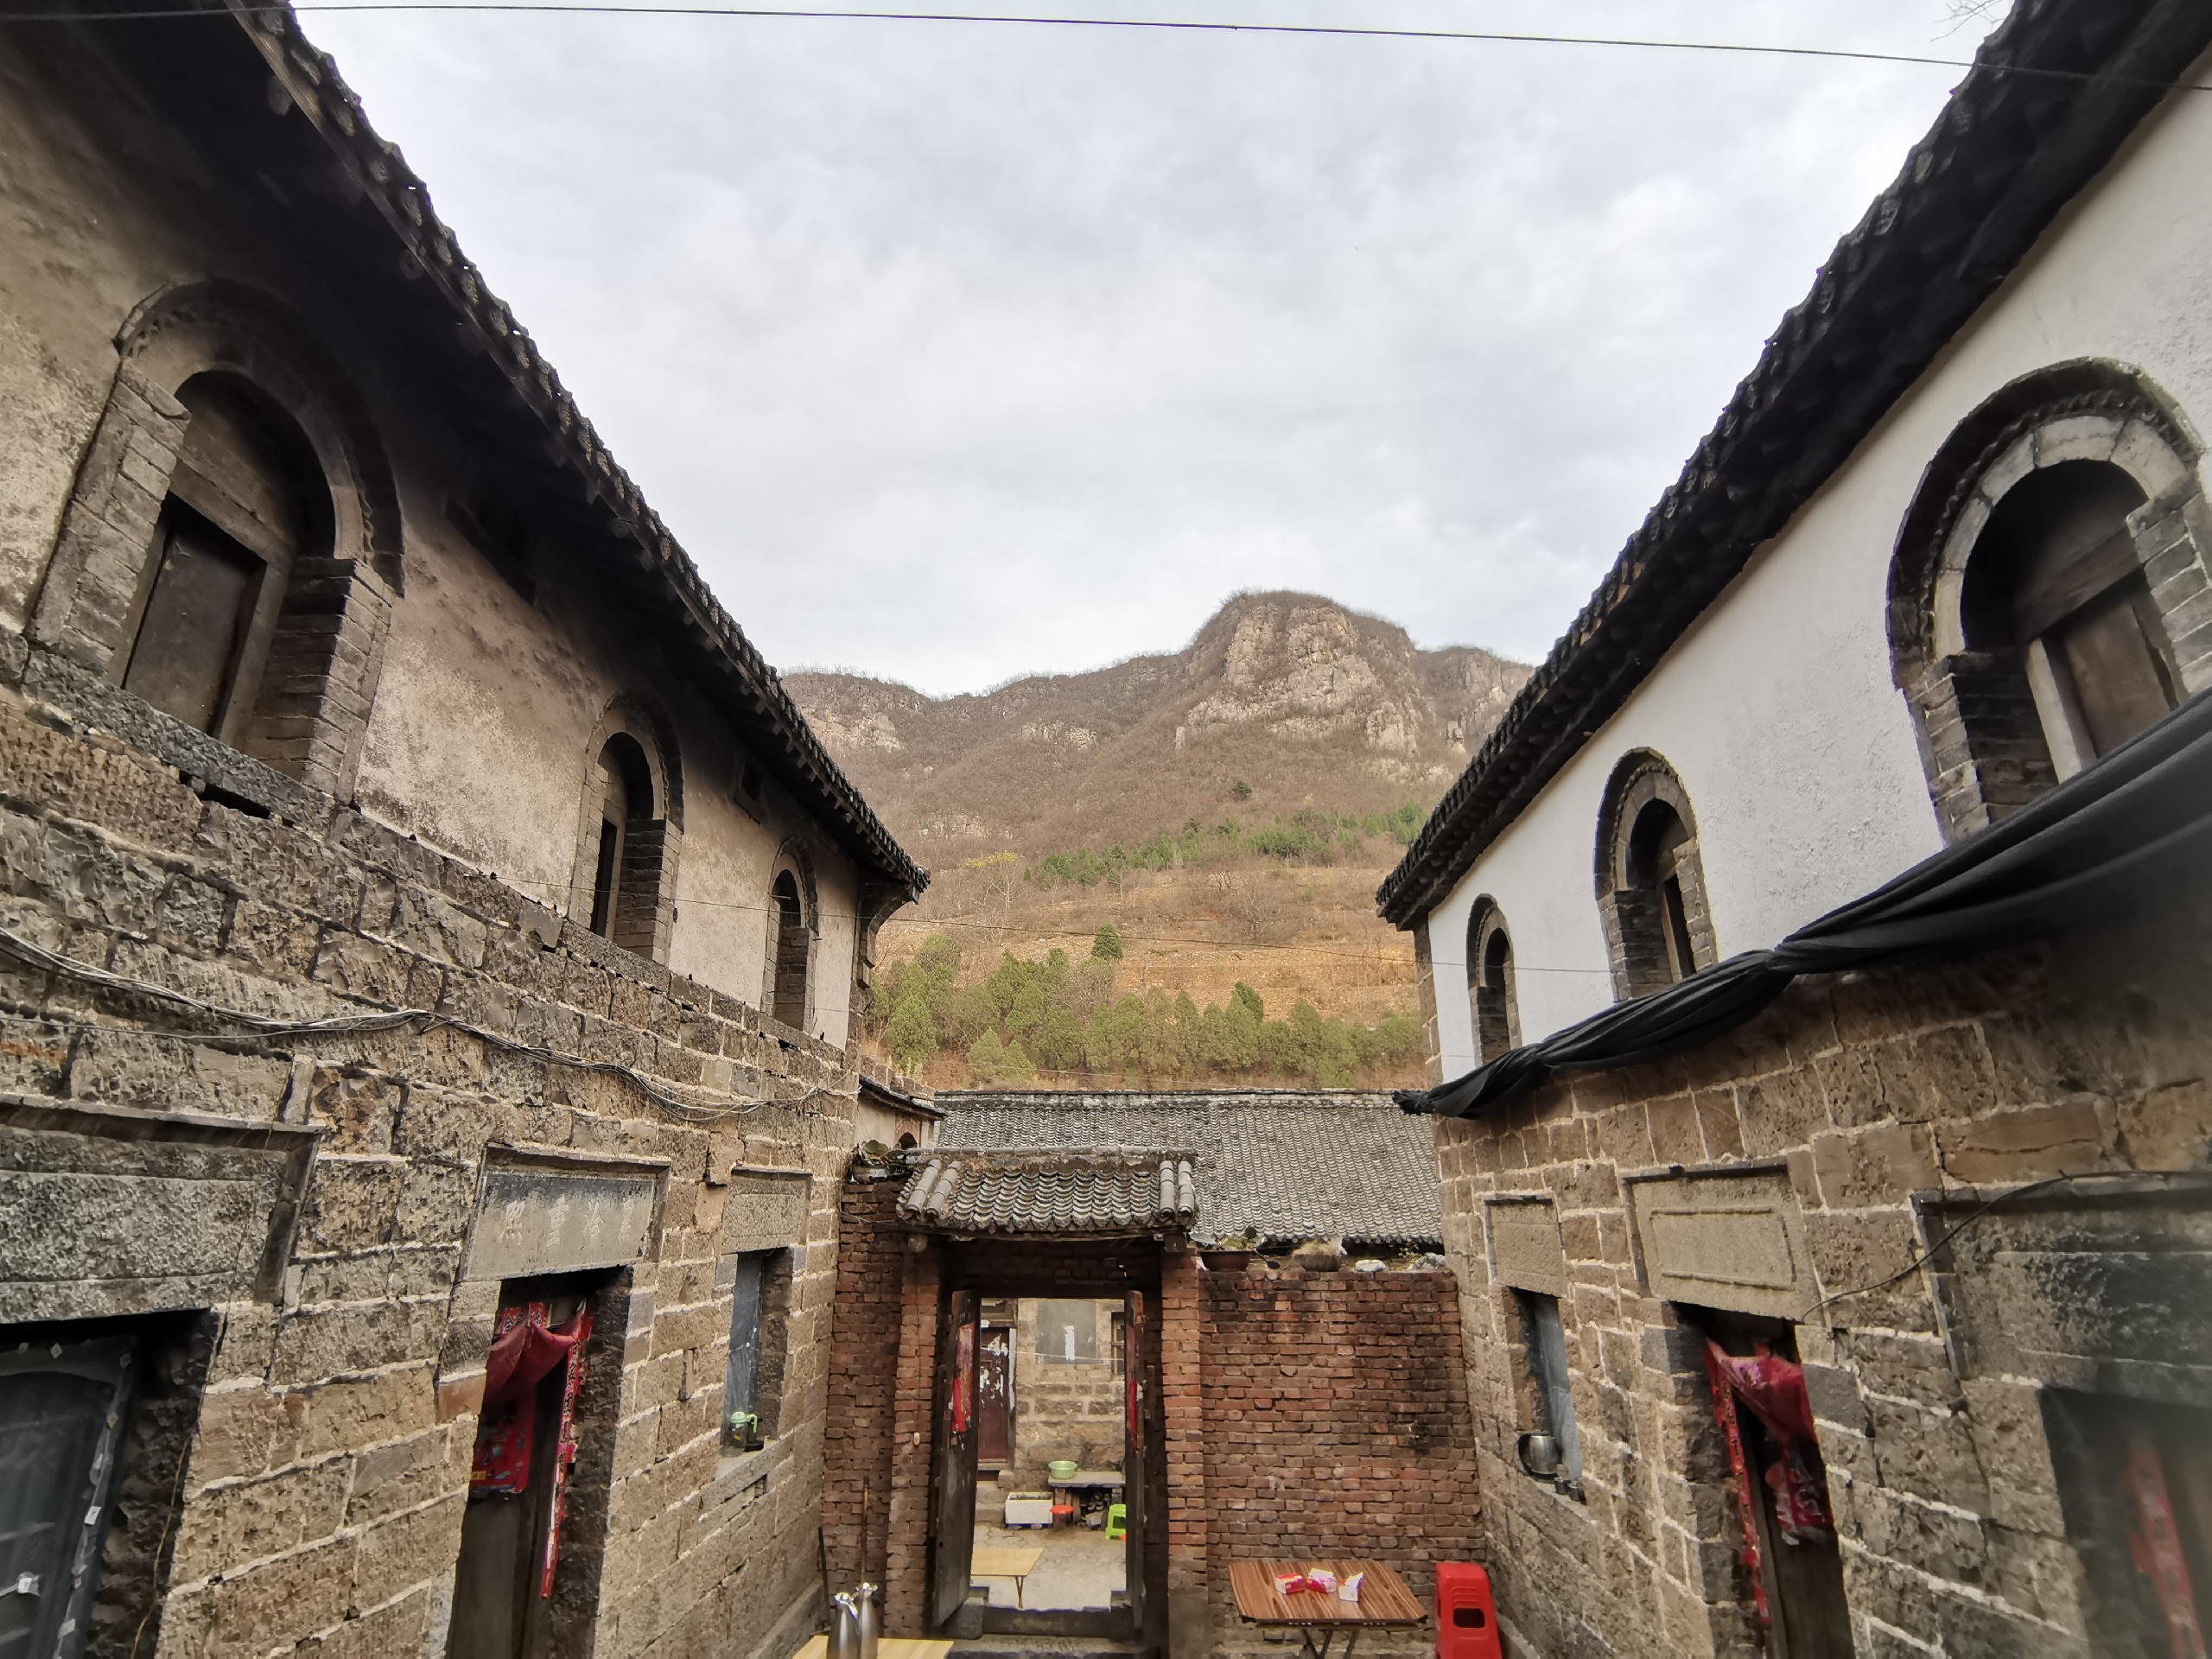 卫辉里峪村乡村旅游图片